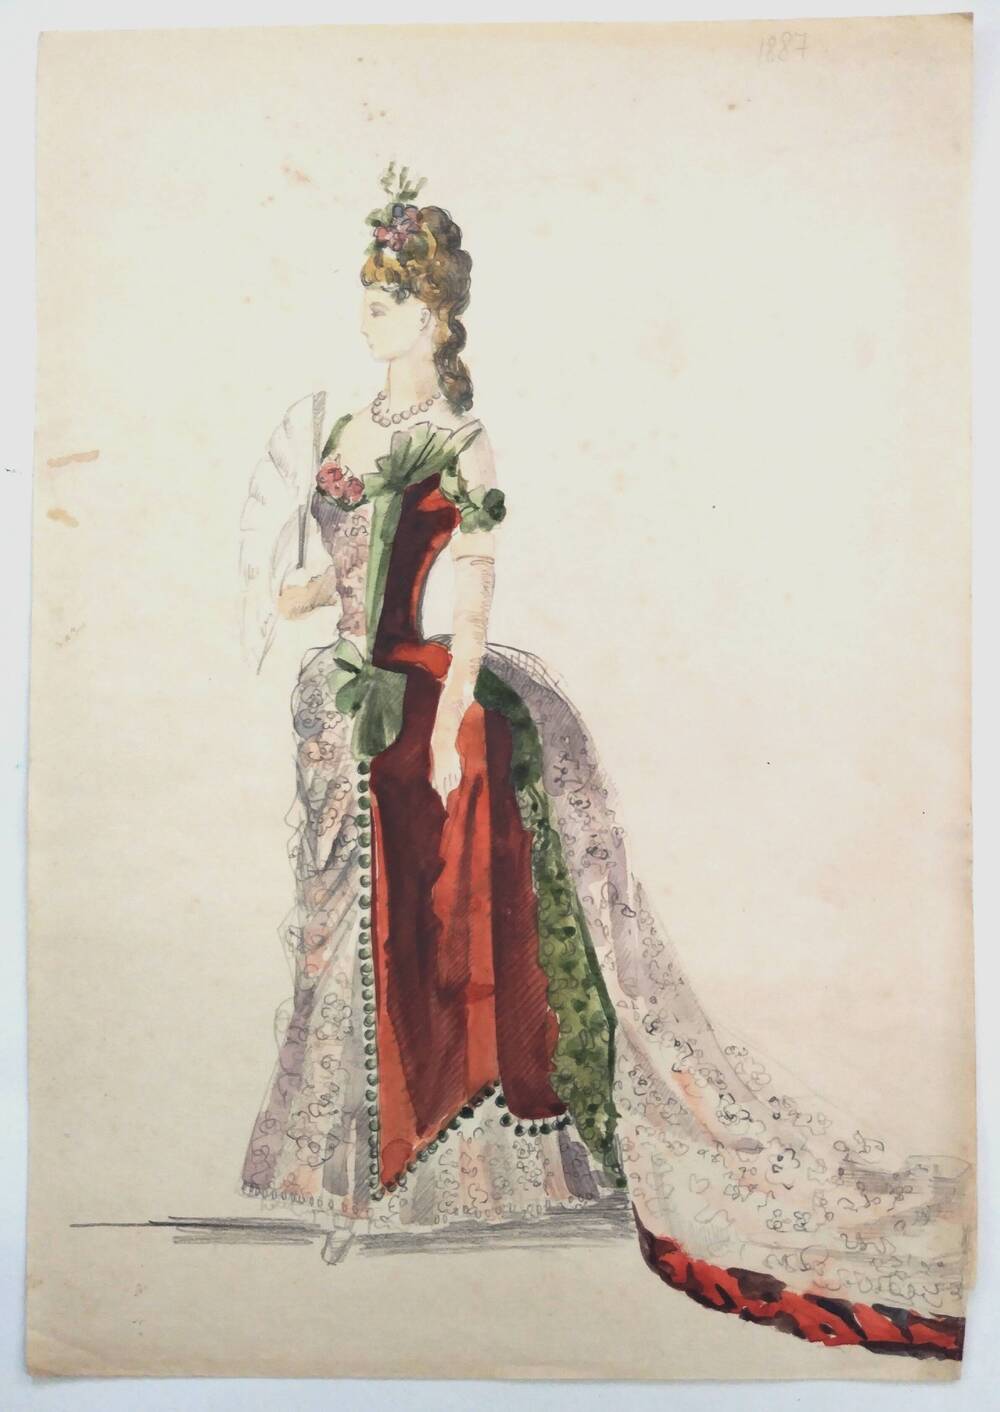 Чернышова Г.А. Эскиз с изображением дамы в костюме с декольте, турнюром и шлейфом 1887 года (стиль бидермайер).